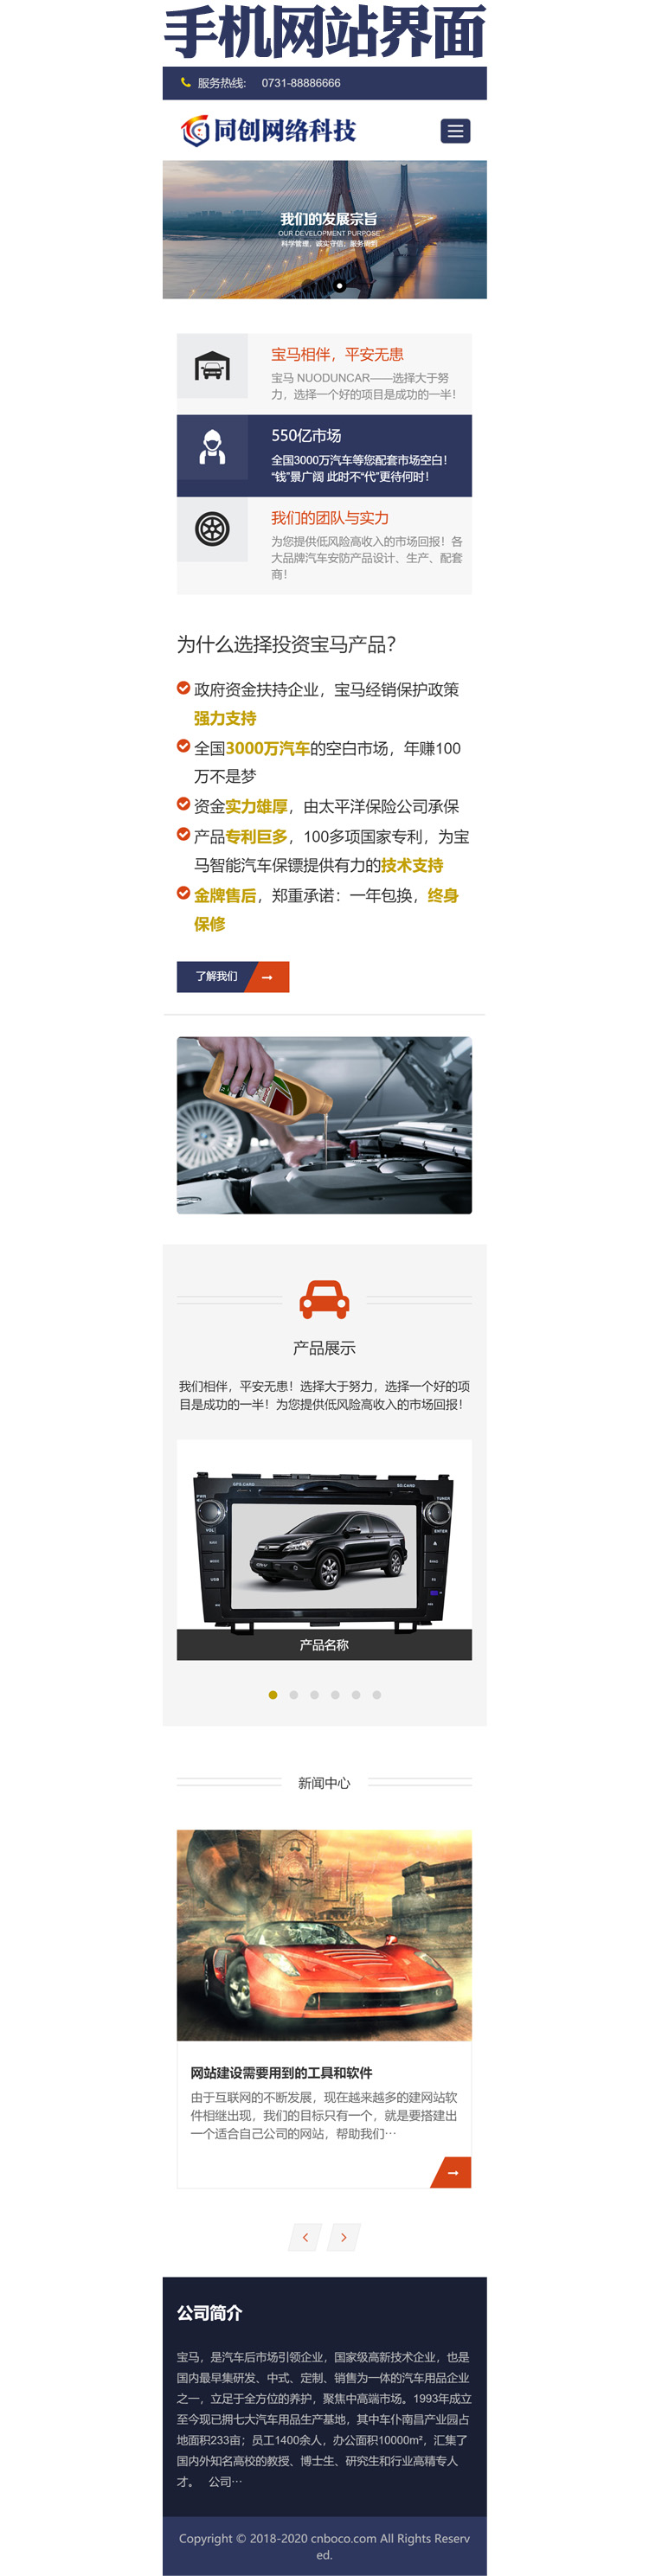 自适应大气汽车配件网站源码程序 -PB007-3